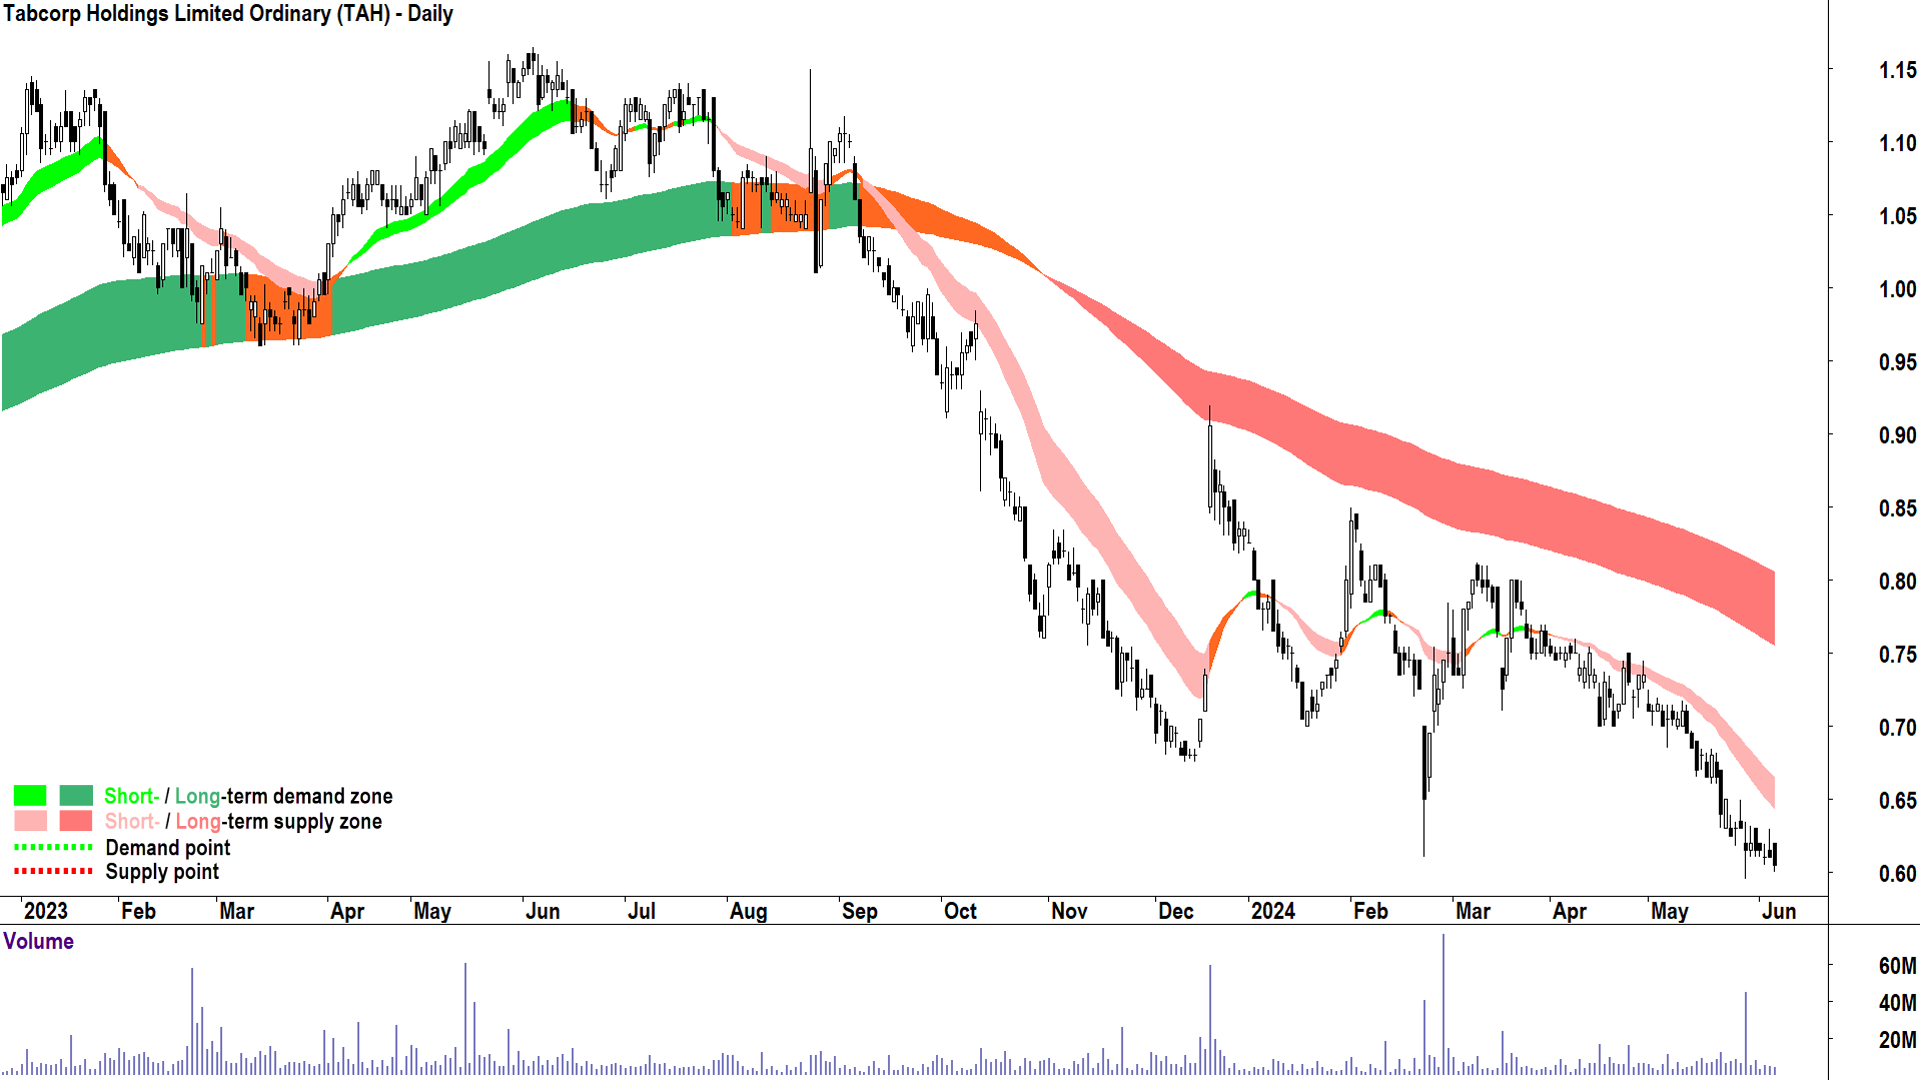 Tabcorp Holdings (ASX-TAH) chart 6 June 2024